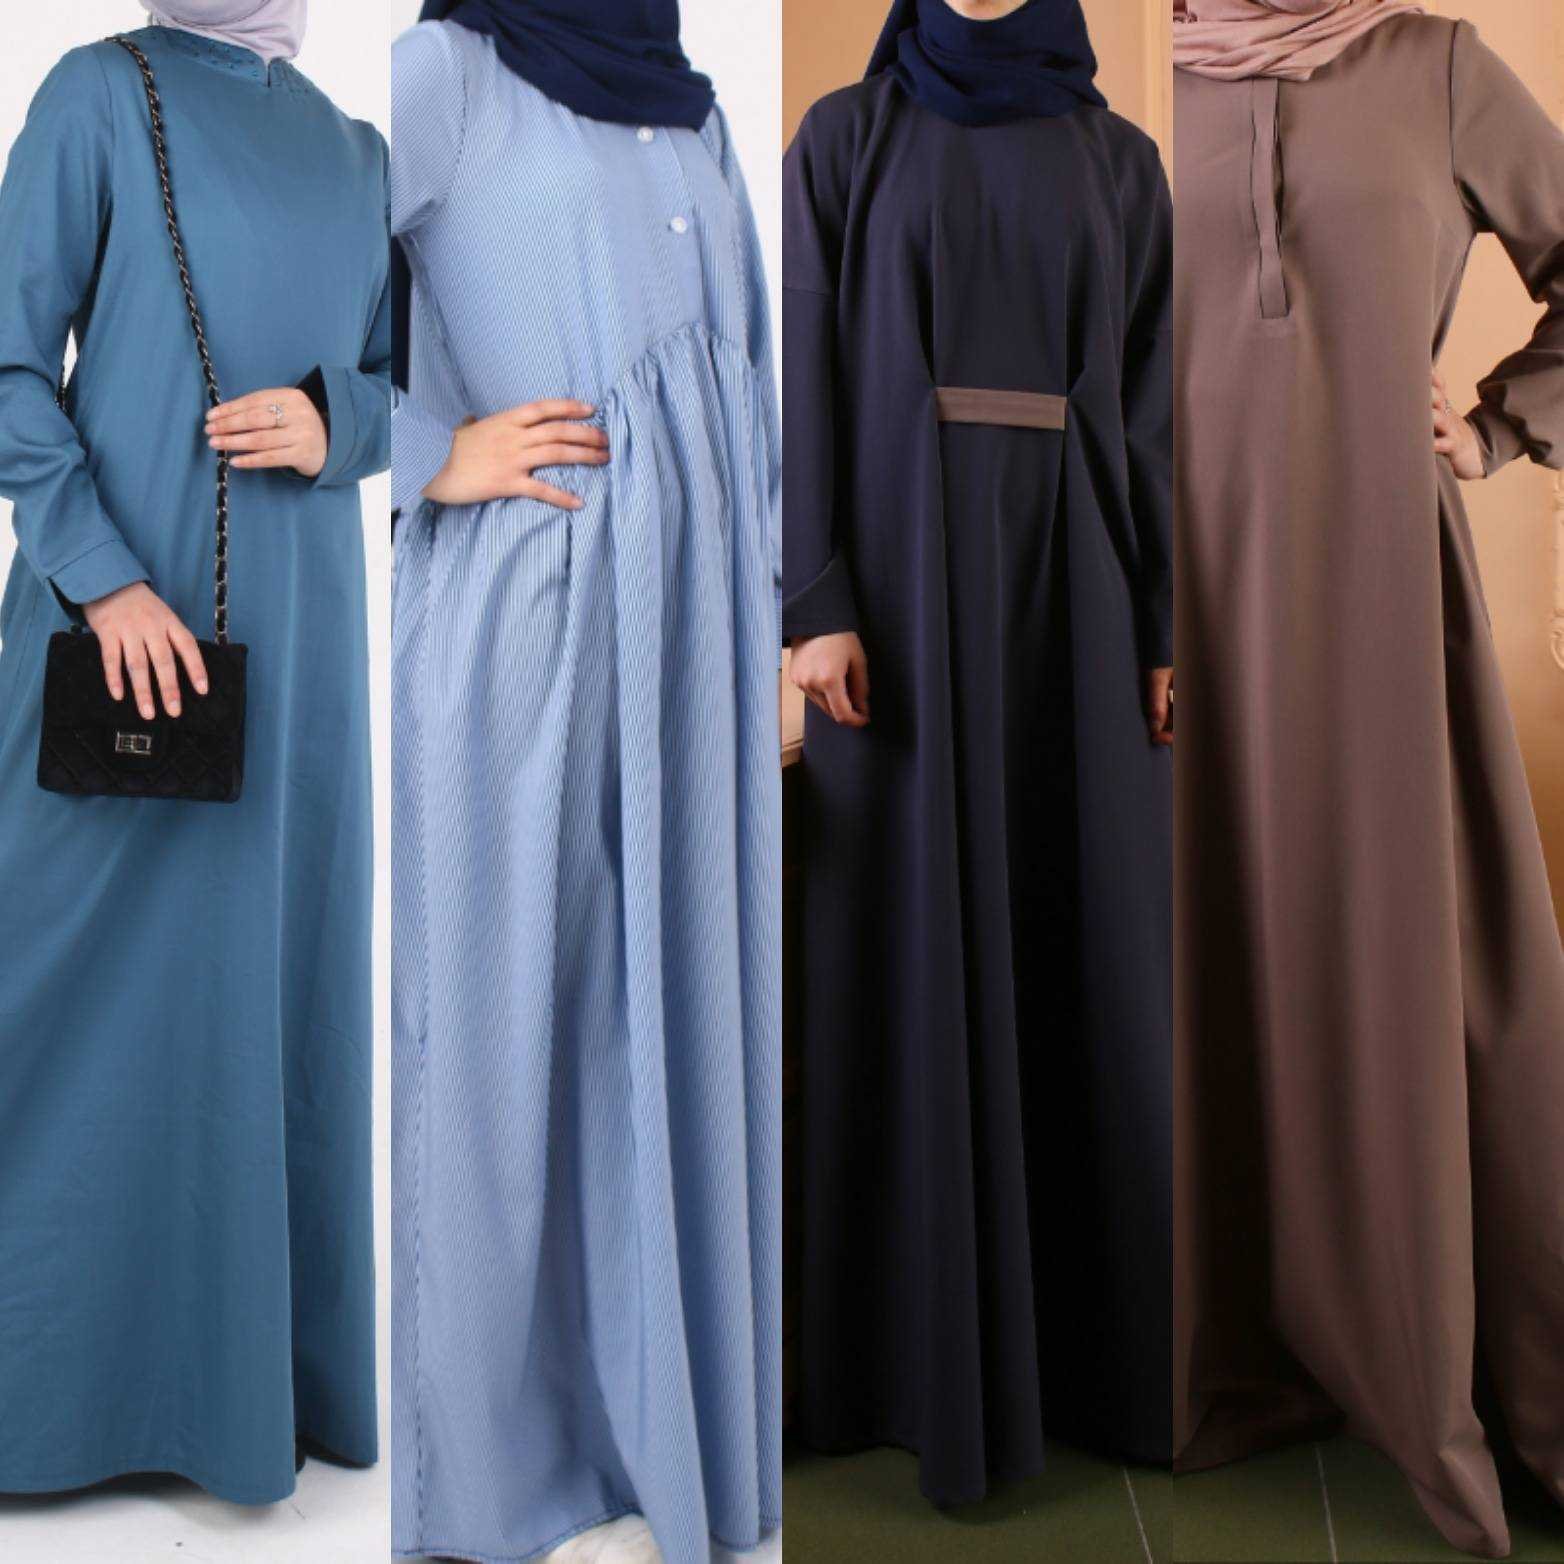 Одежда для мусульманских женщин интернет. Мусульманское платье.. Мусульманская одежда для женщин. Платья для мусульманок. Исламские платья для женщин.